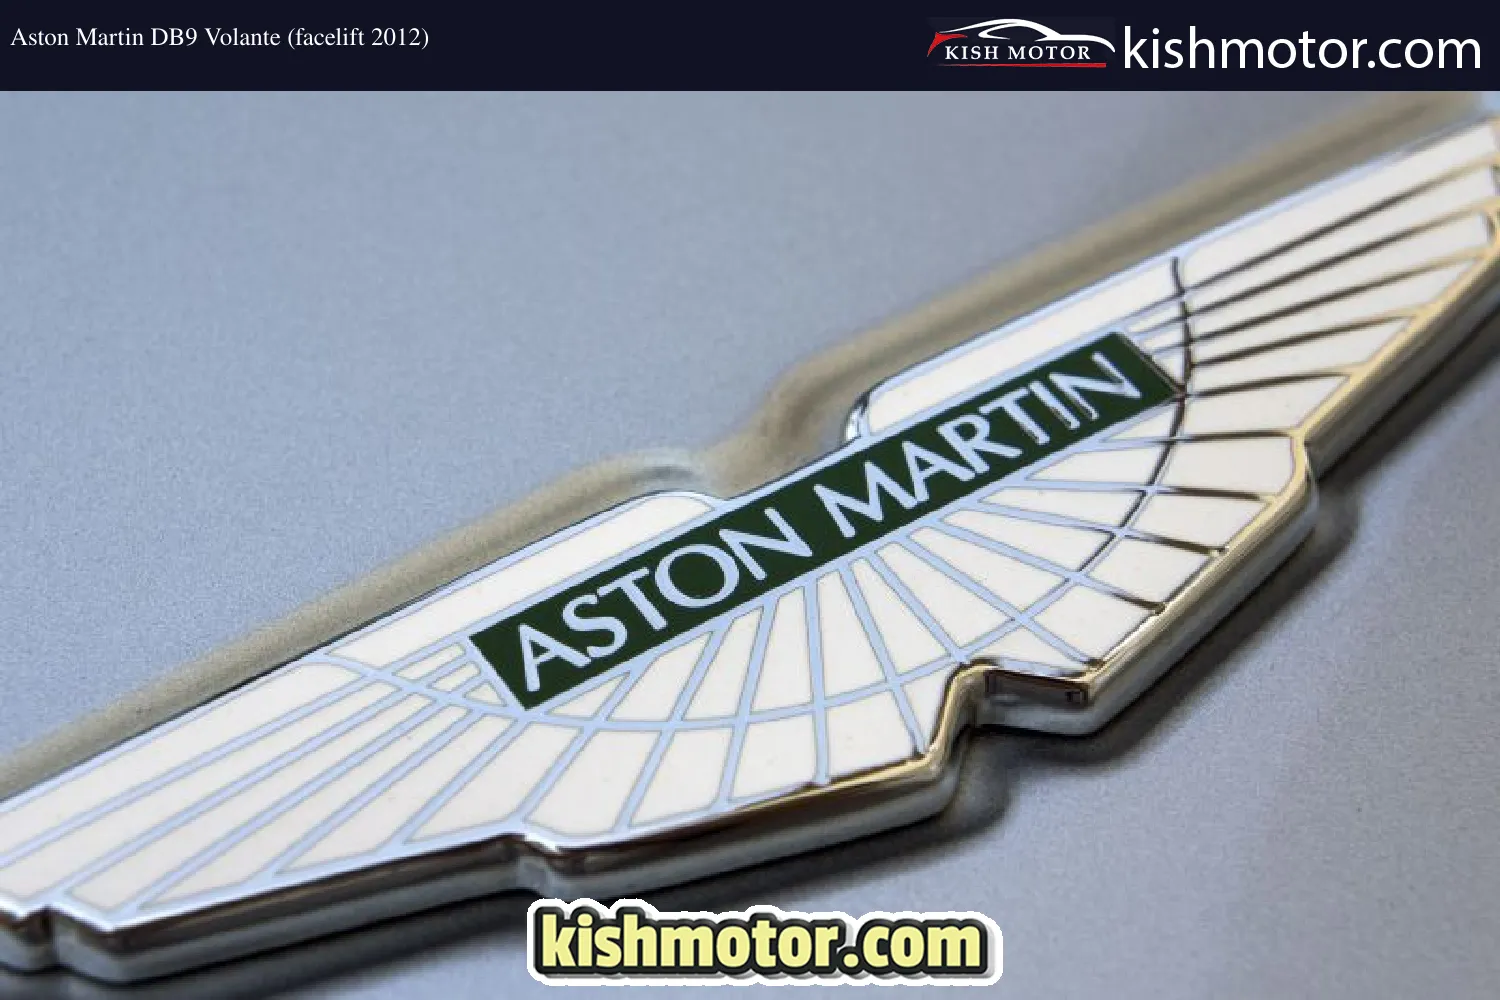 Aston Martin DB9 Volante (facelift 2012)